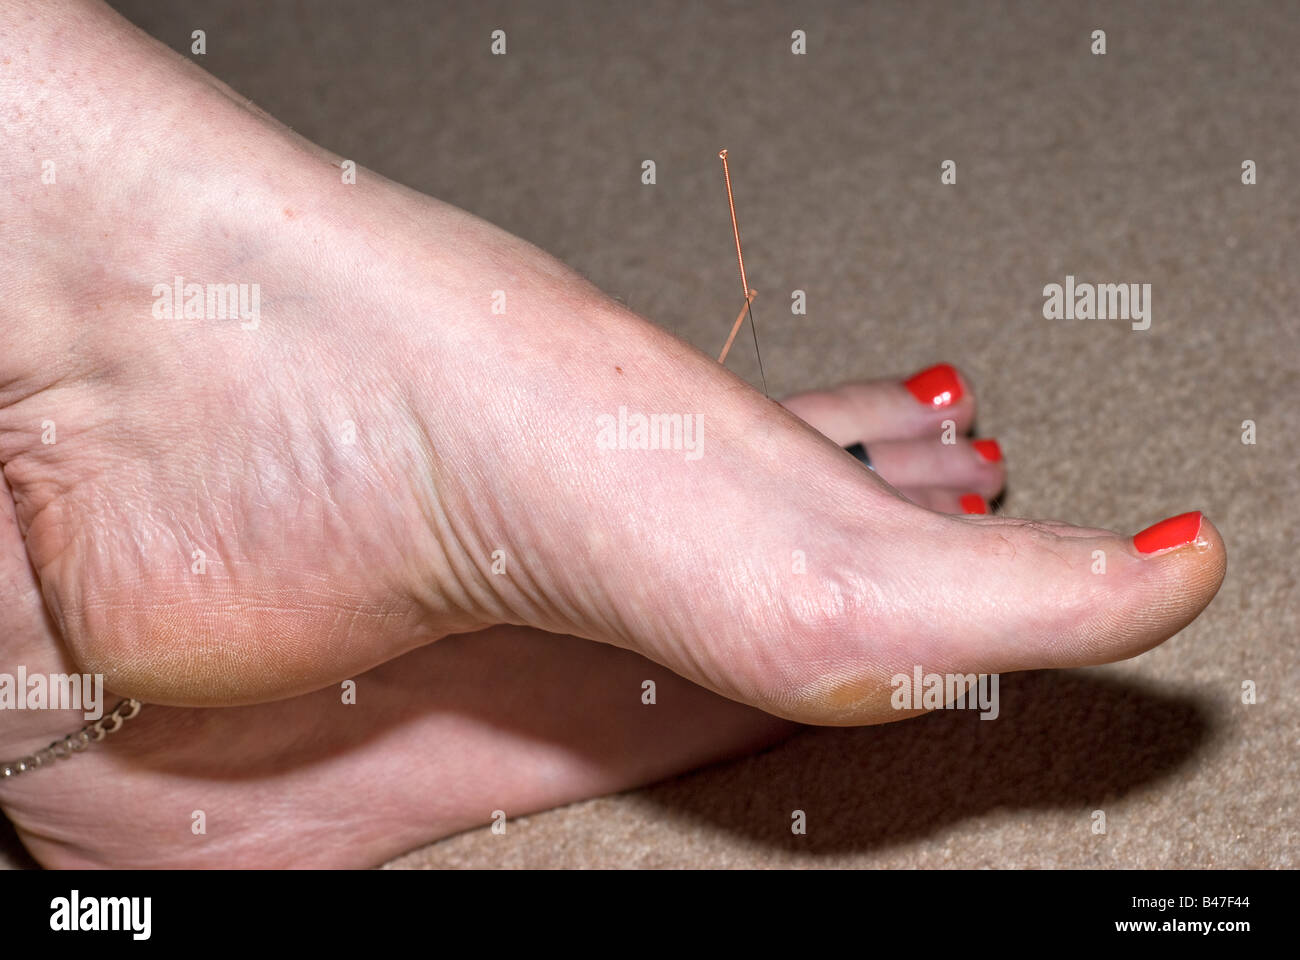 Aiguille d'Acupuncture dans le foie 3 point de pied Photo Stock - Alamy